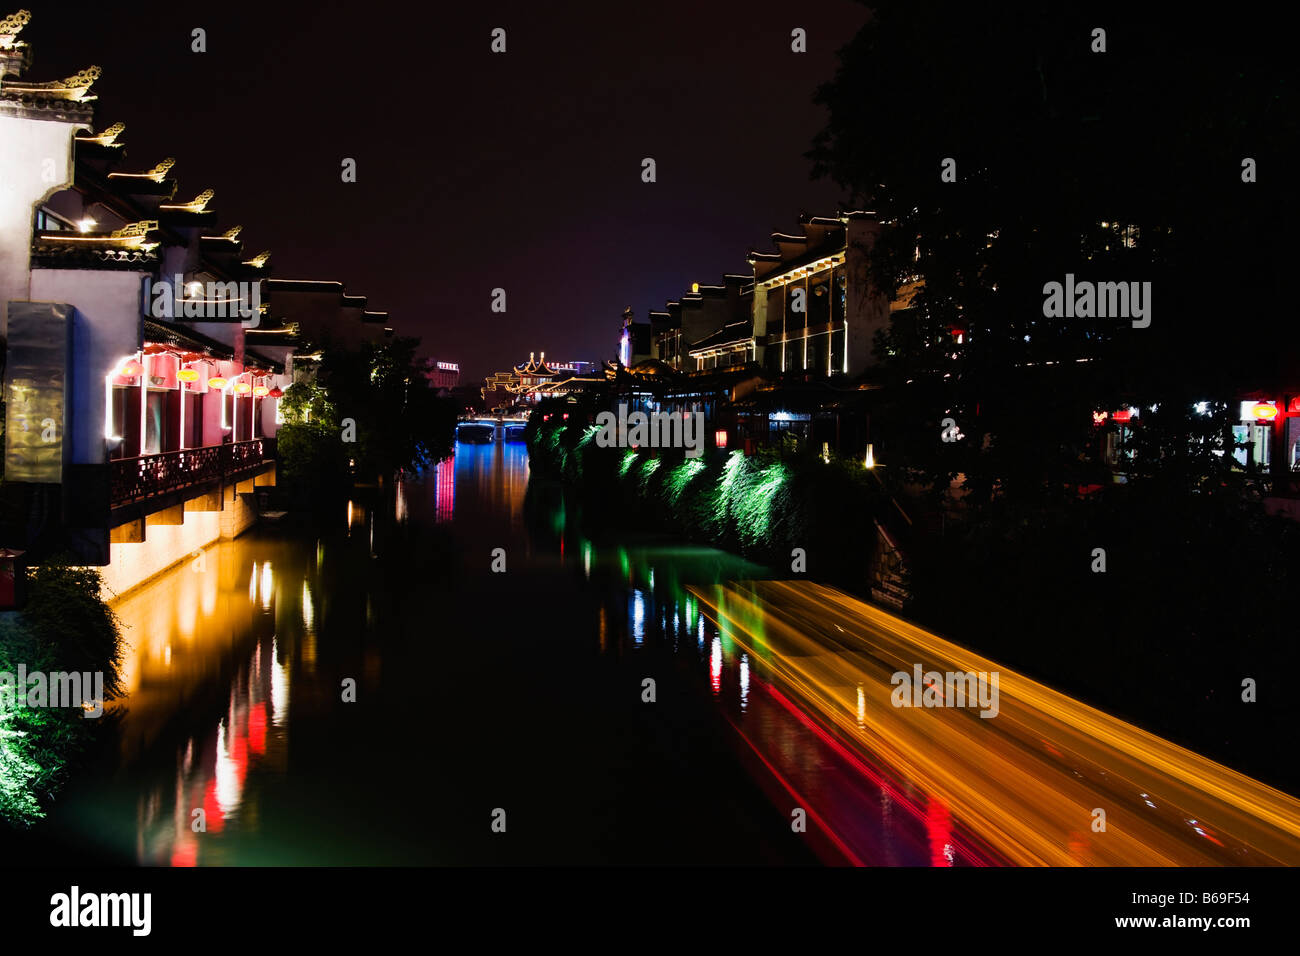 Reflection of buildings in water, Nanjing, Jiangsu Province, China Stock Photo